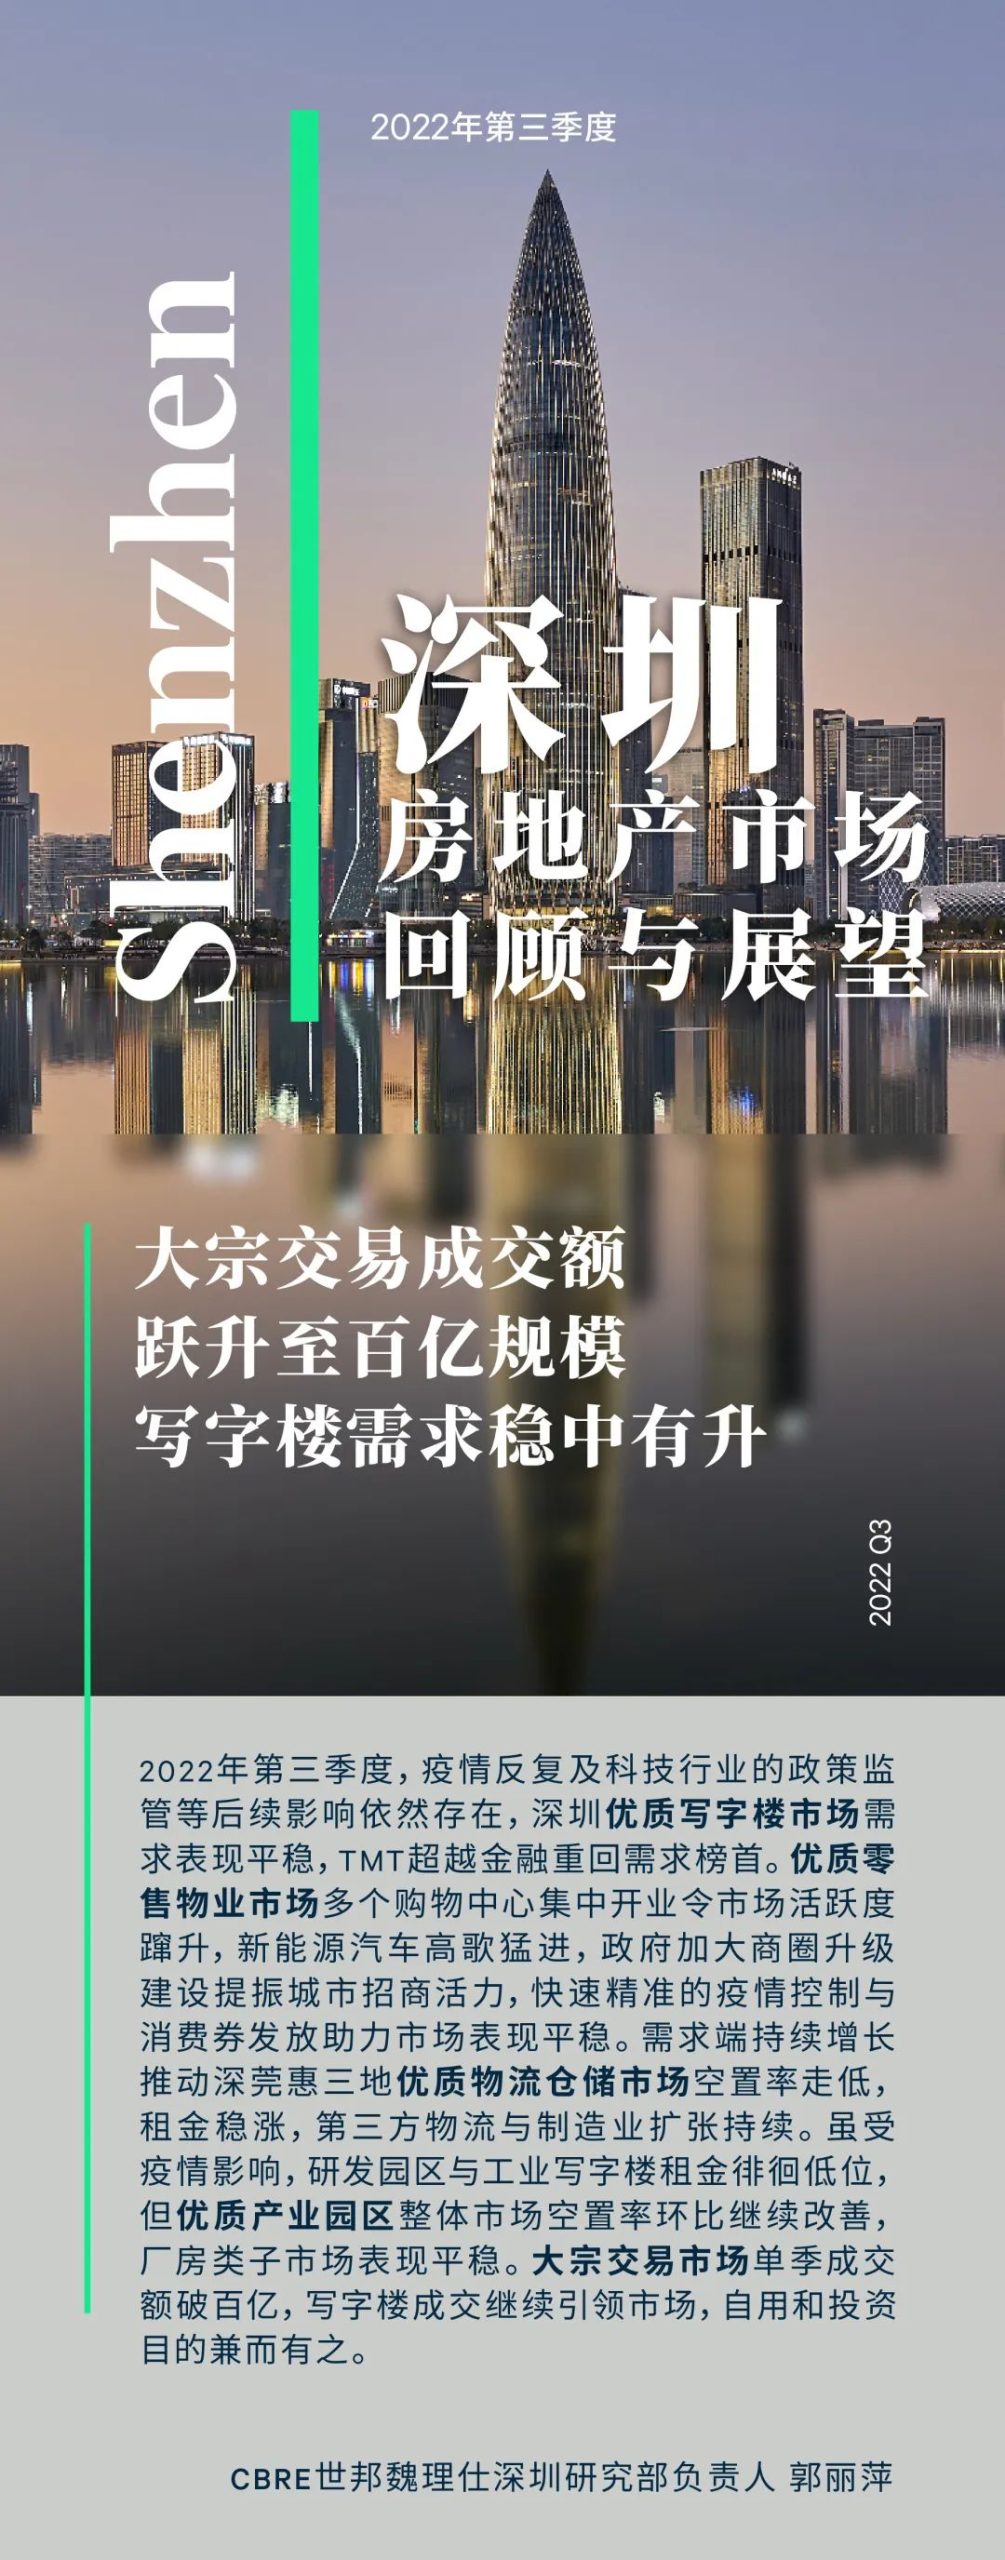 cbre:2022年第三季度深圳房地产市场回顾与展望